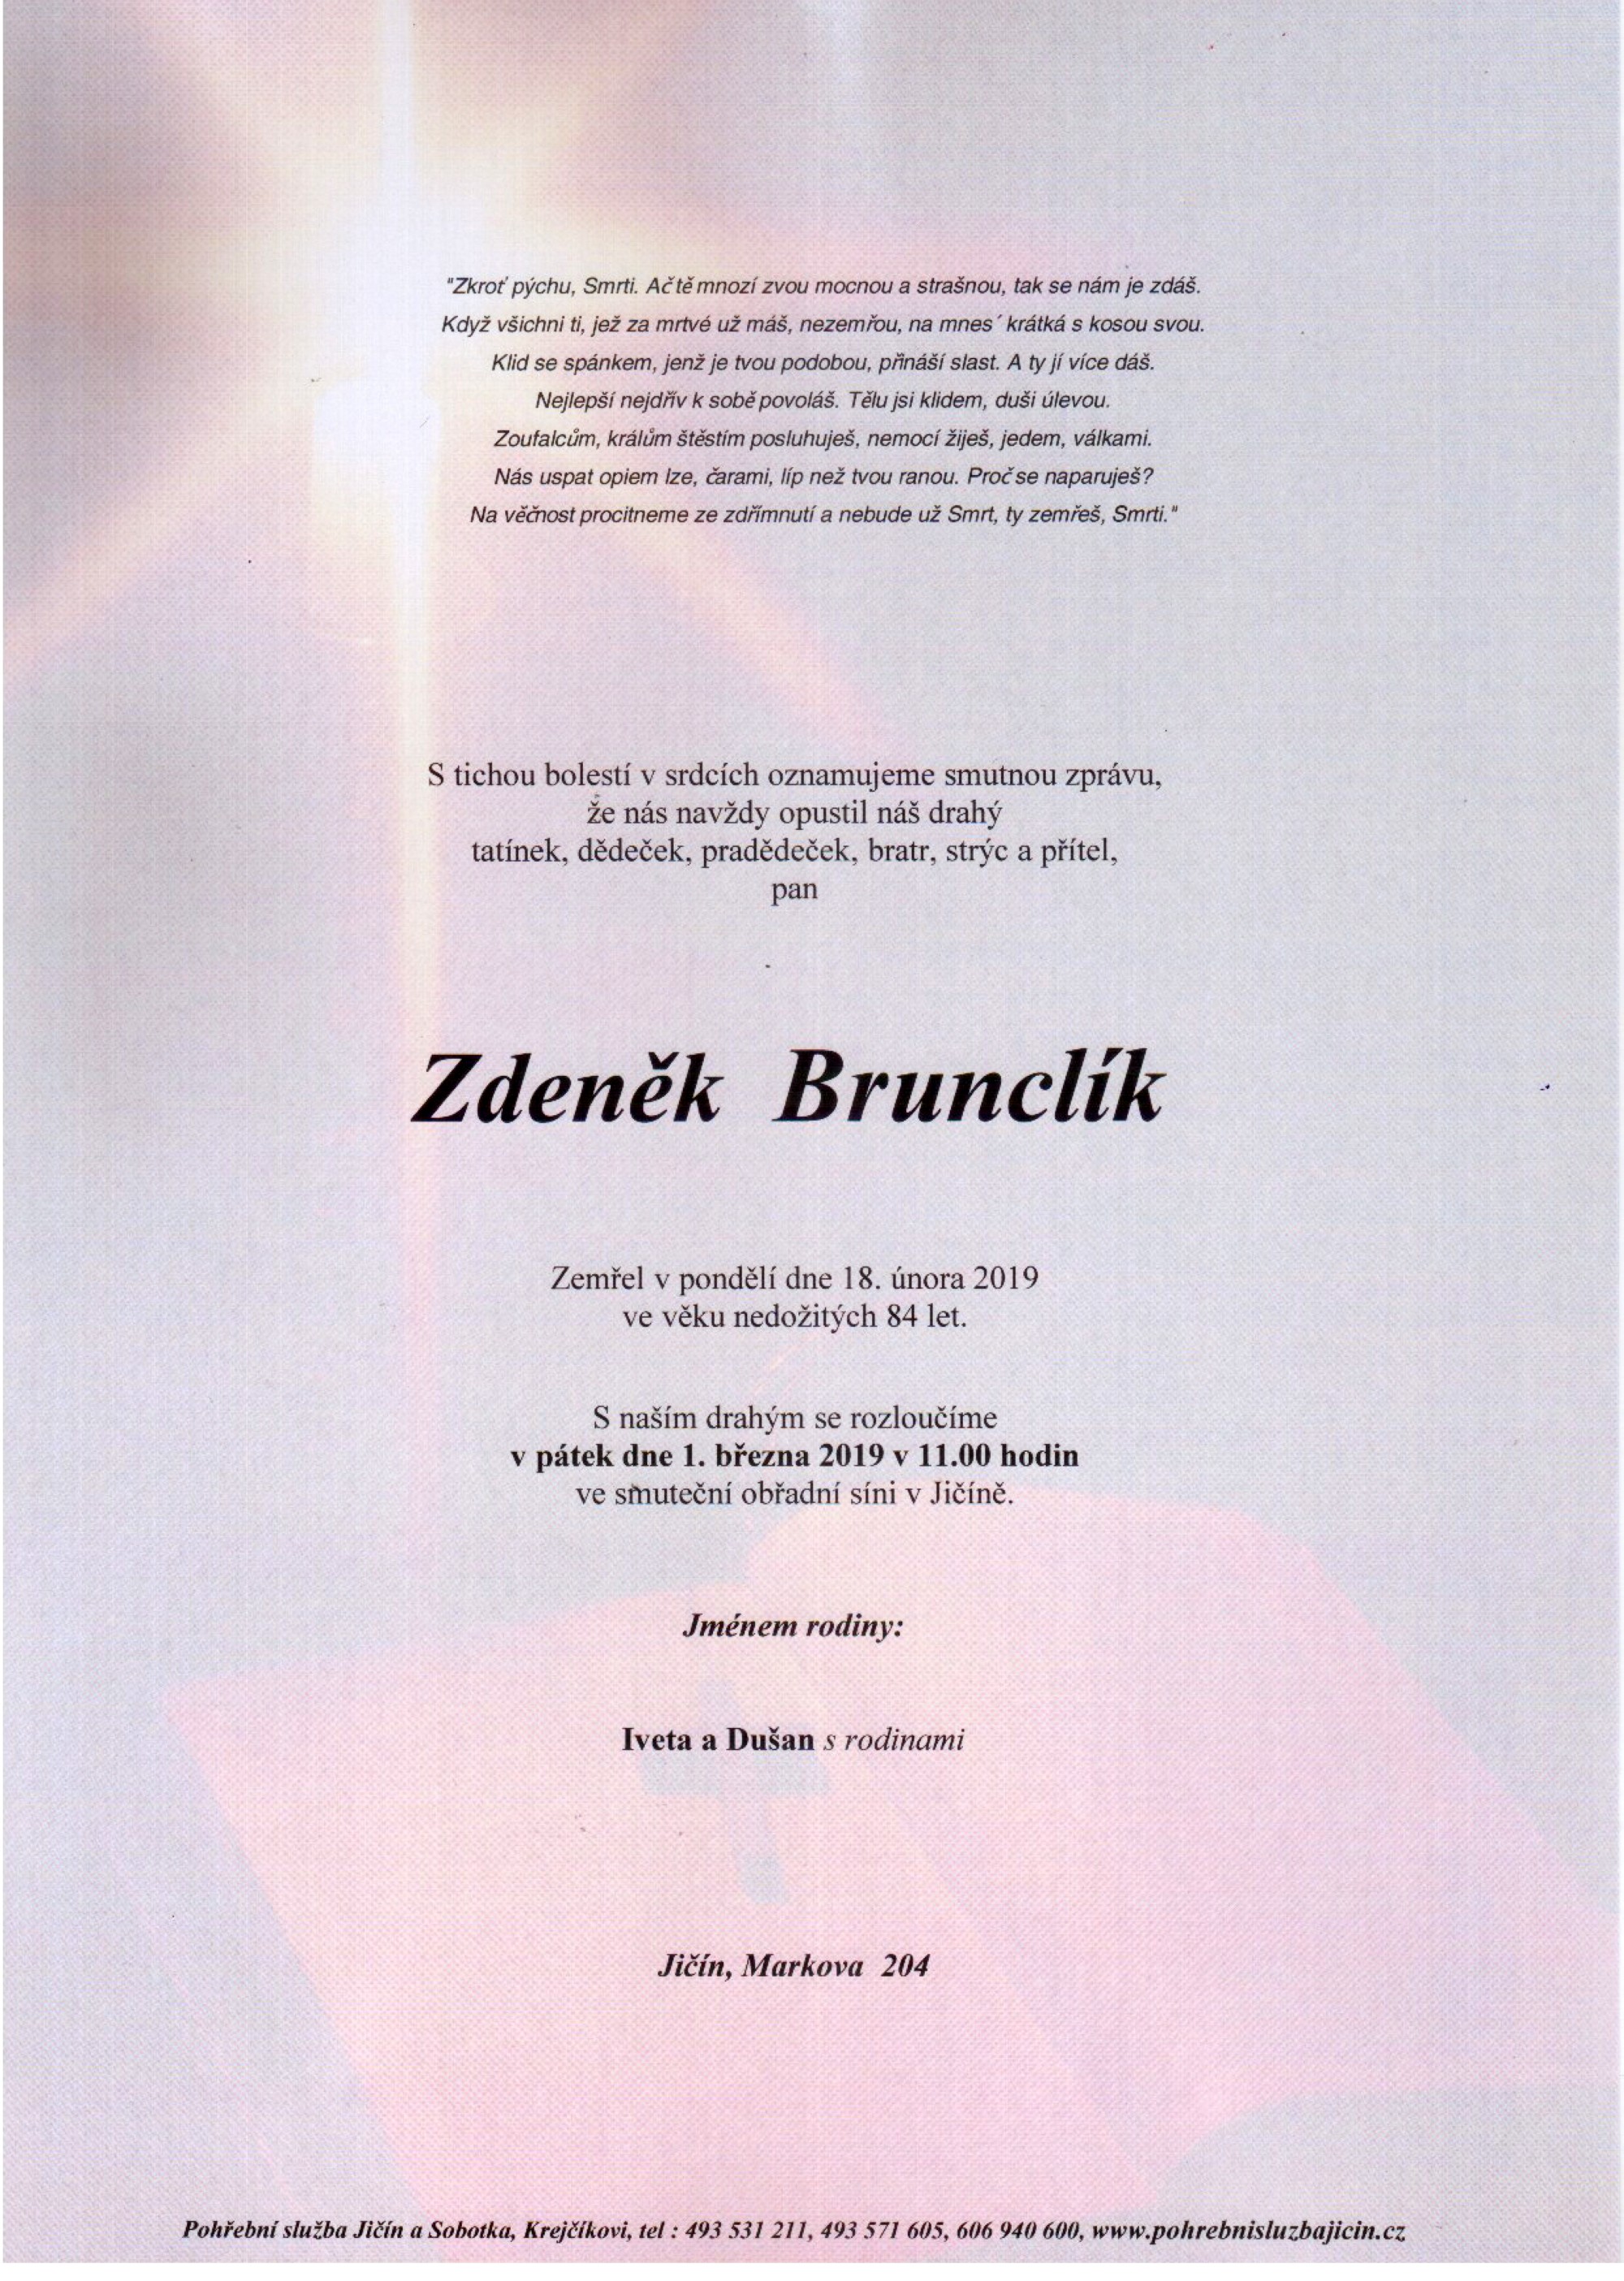 Zdeněk Brunclík